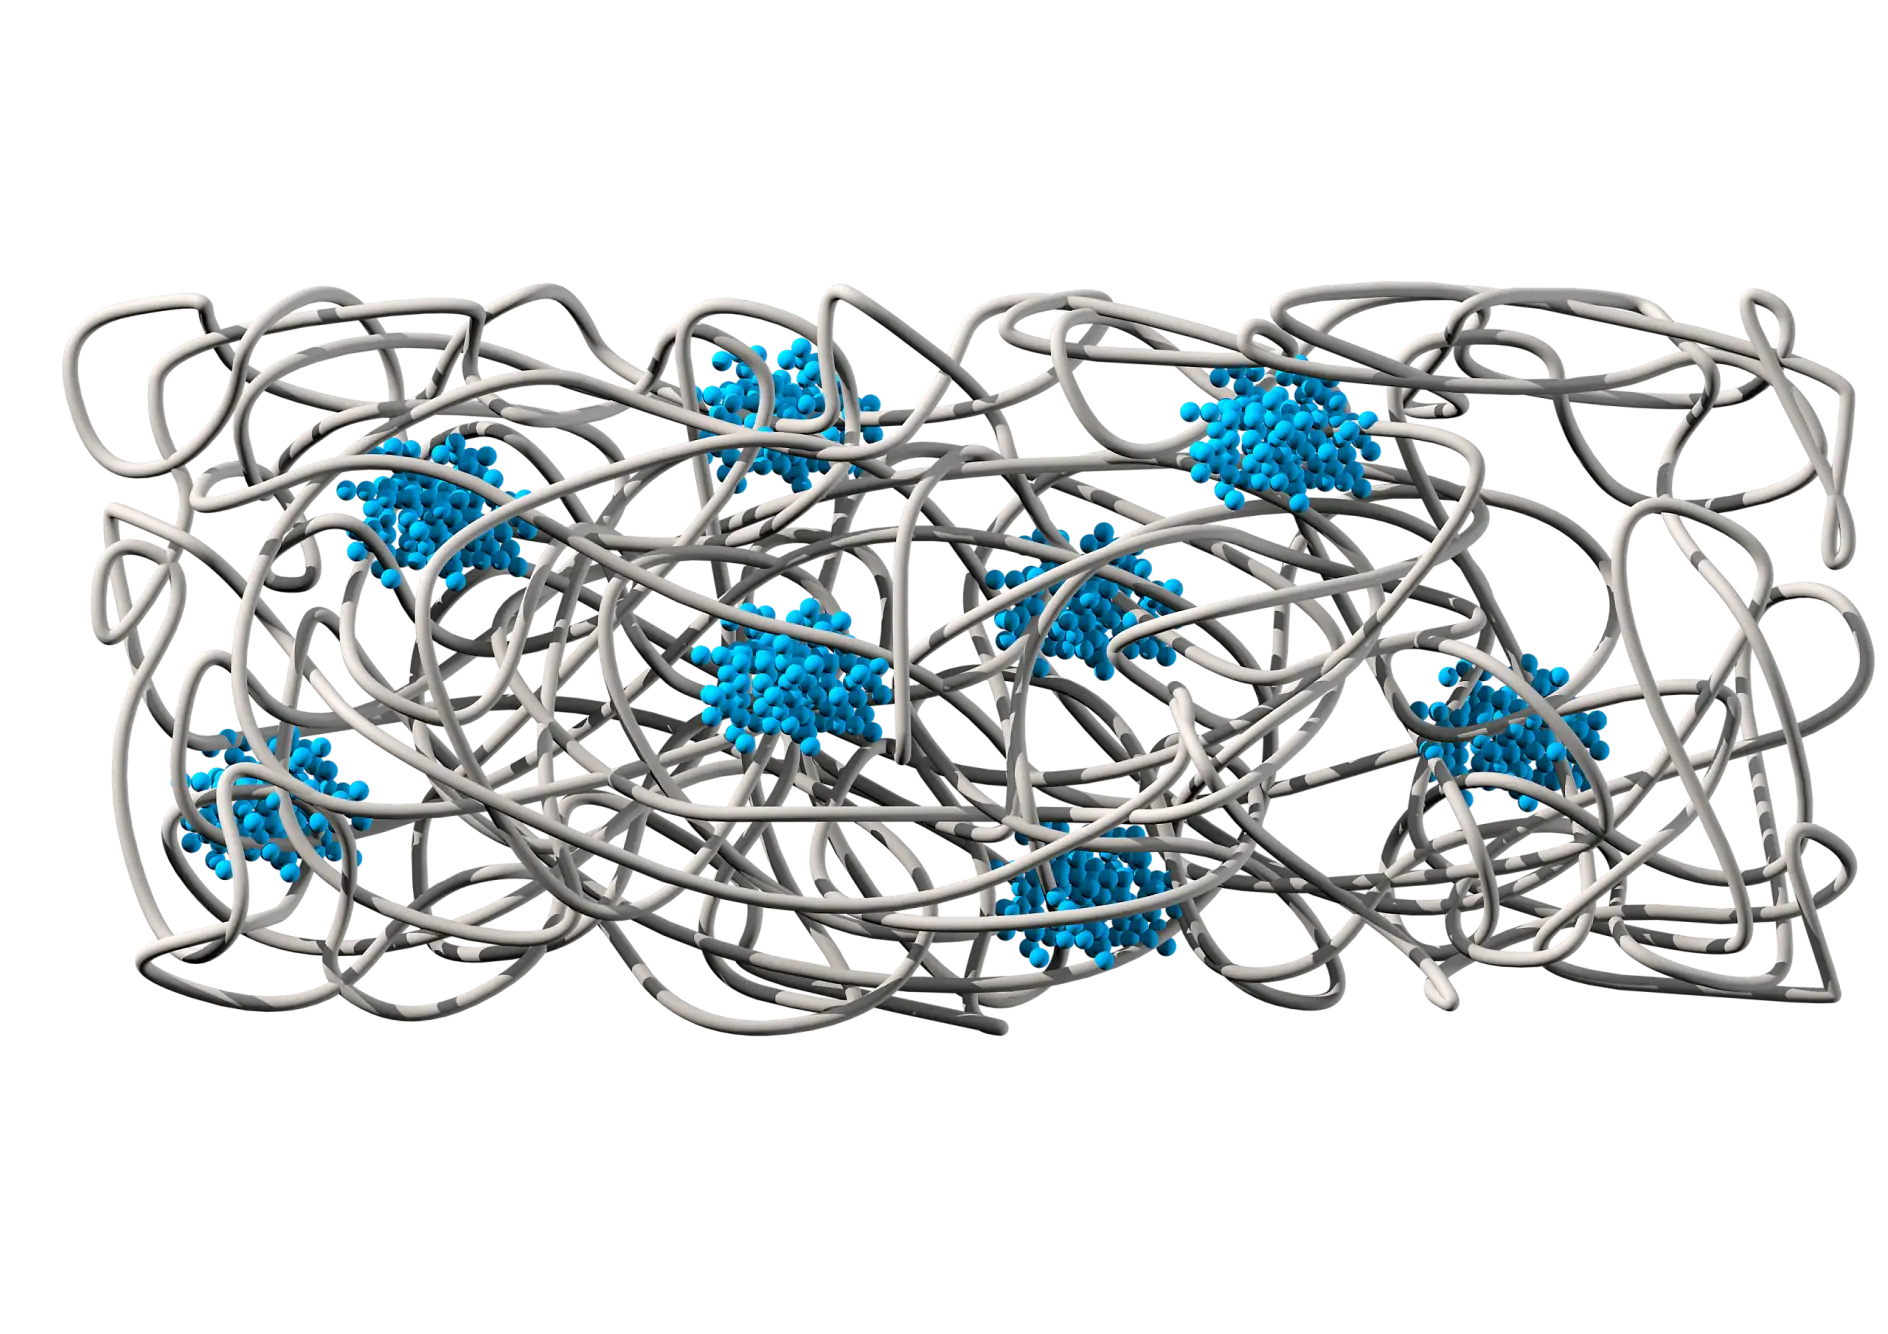 De chemische structuur toont een rubbermatrix (grijs) die voor adhesie en elasticiteit zorgt. De polystyreenkernen (blauw) bieden cohesie en scheurbestendigheid.